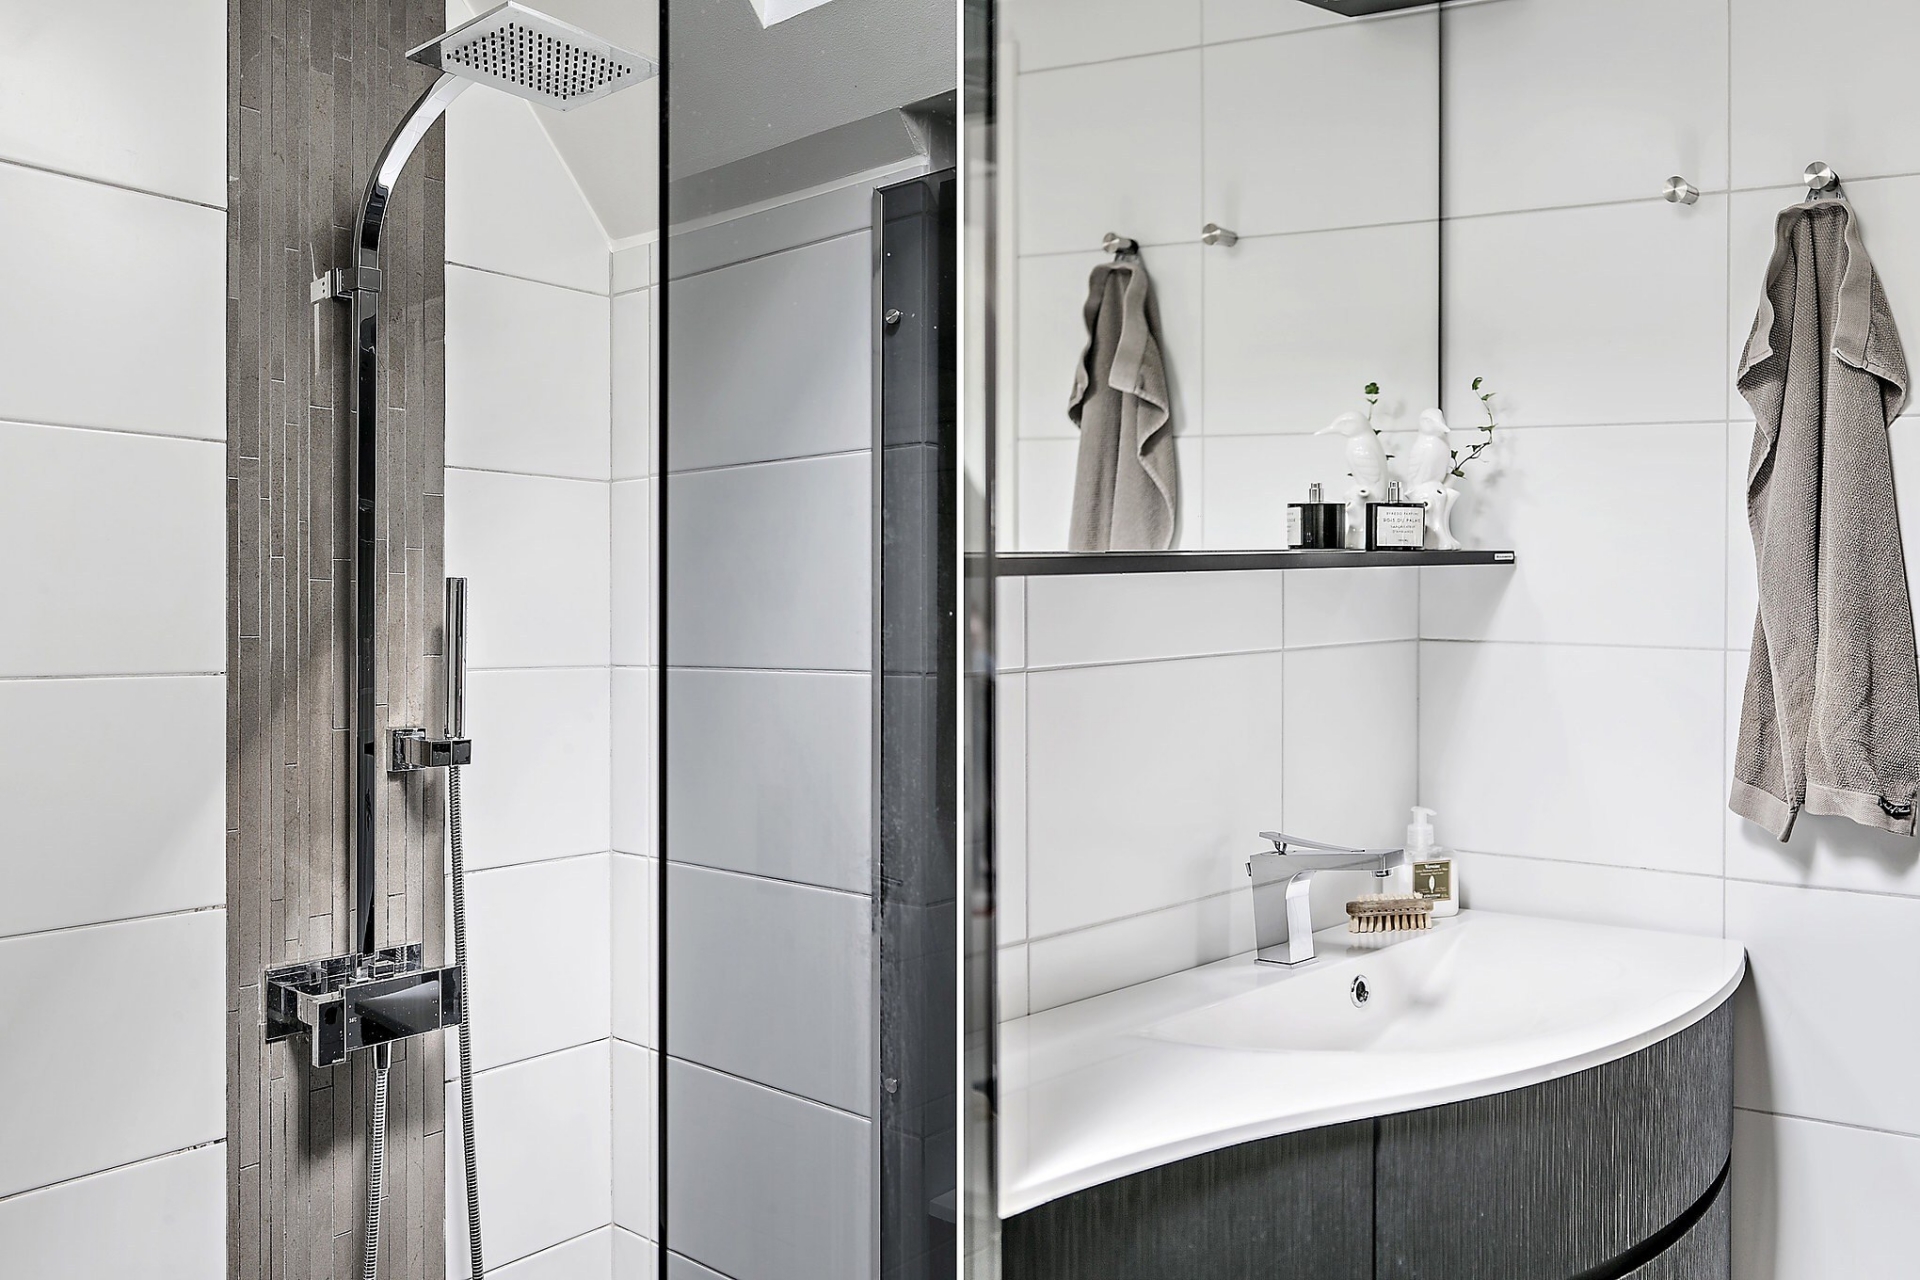 Buồng tắm vòi sen phân vùng với khu vực toilet bằng cửa kính gương mờ. Tủ vanity với đường con mềm mại duyên dáng, phía trên bồn rửa là gương soi kết hợp kệ mở tiện ích. 